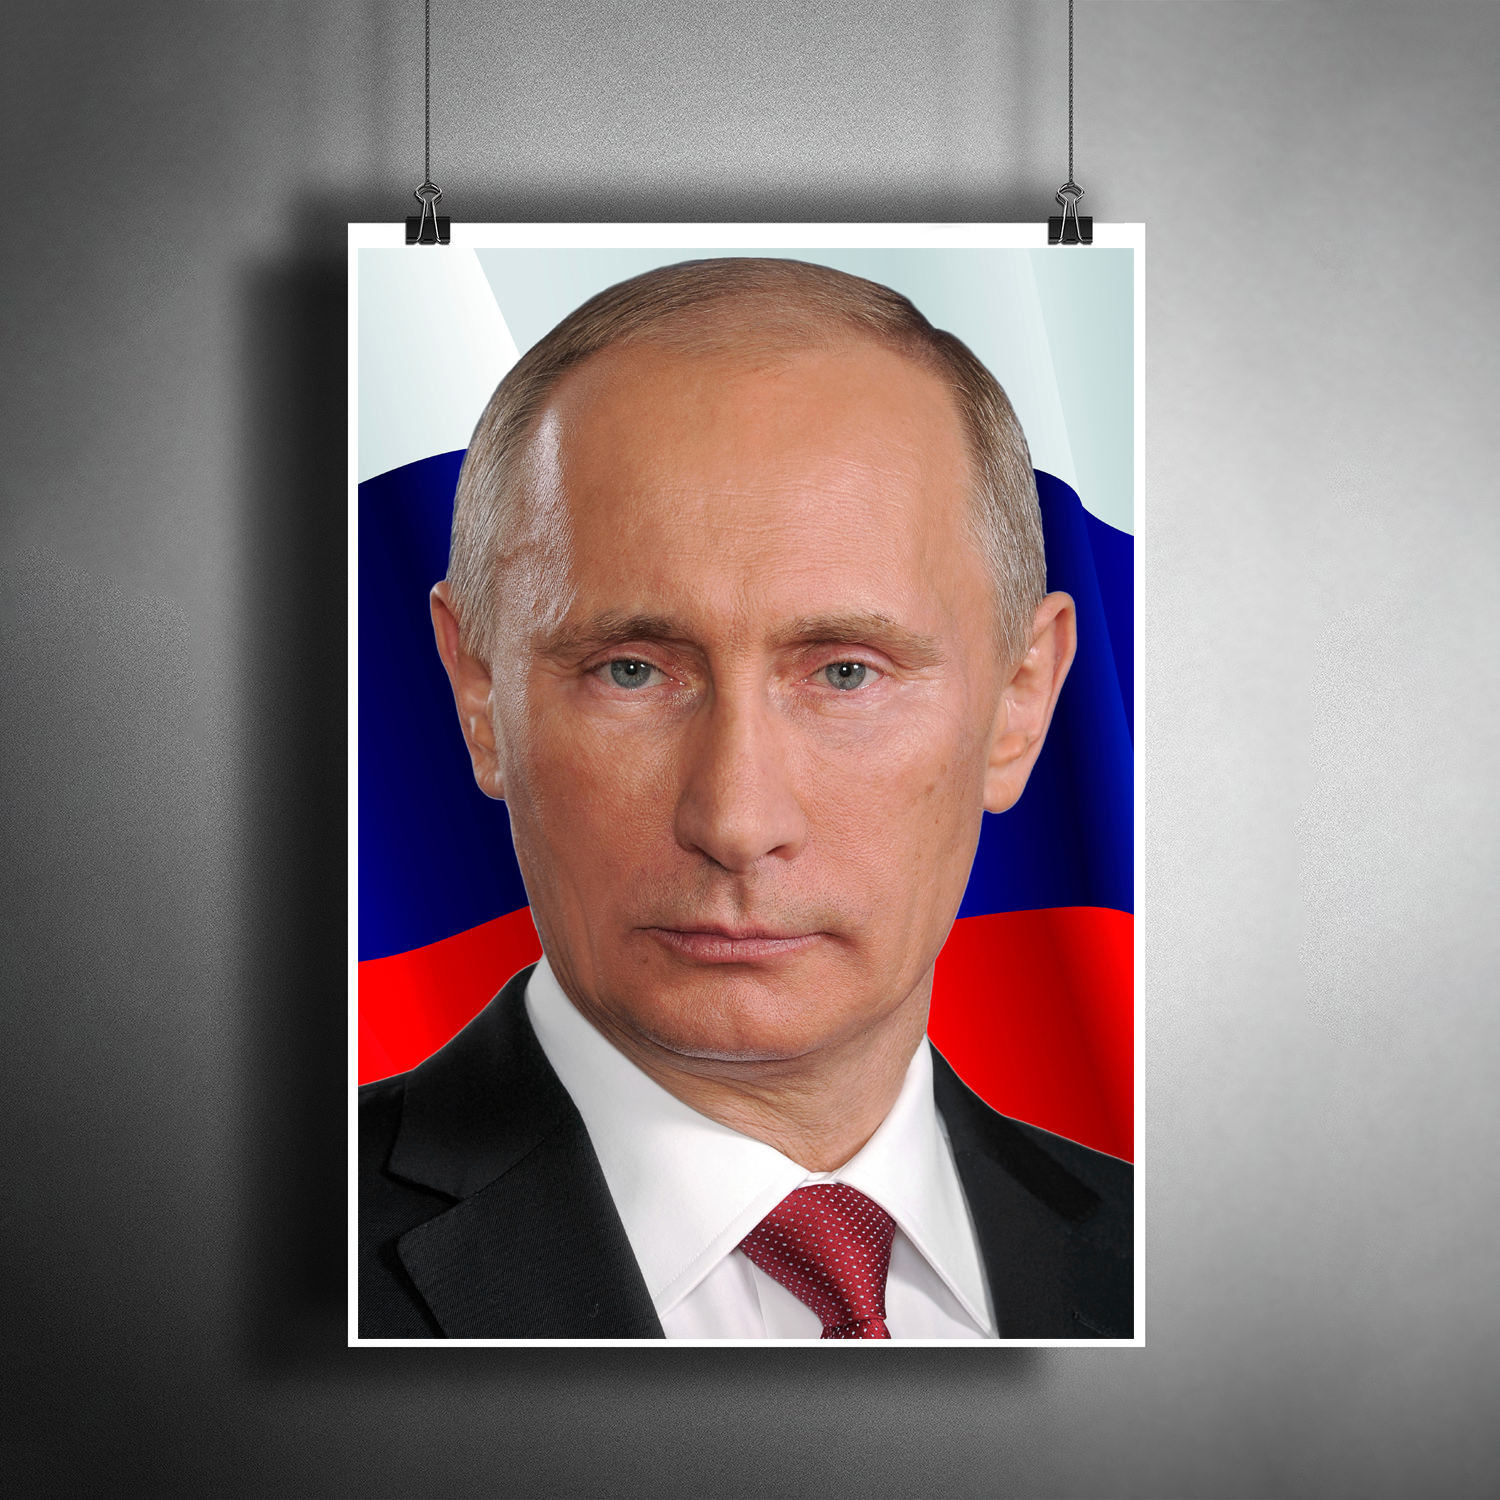 Фото Путина На Стену В Кабинет